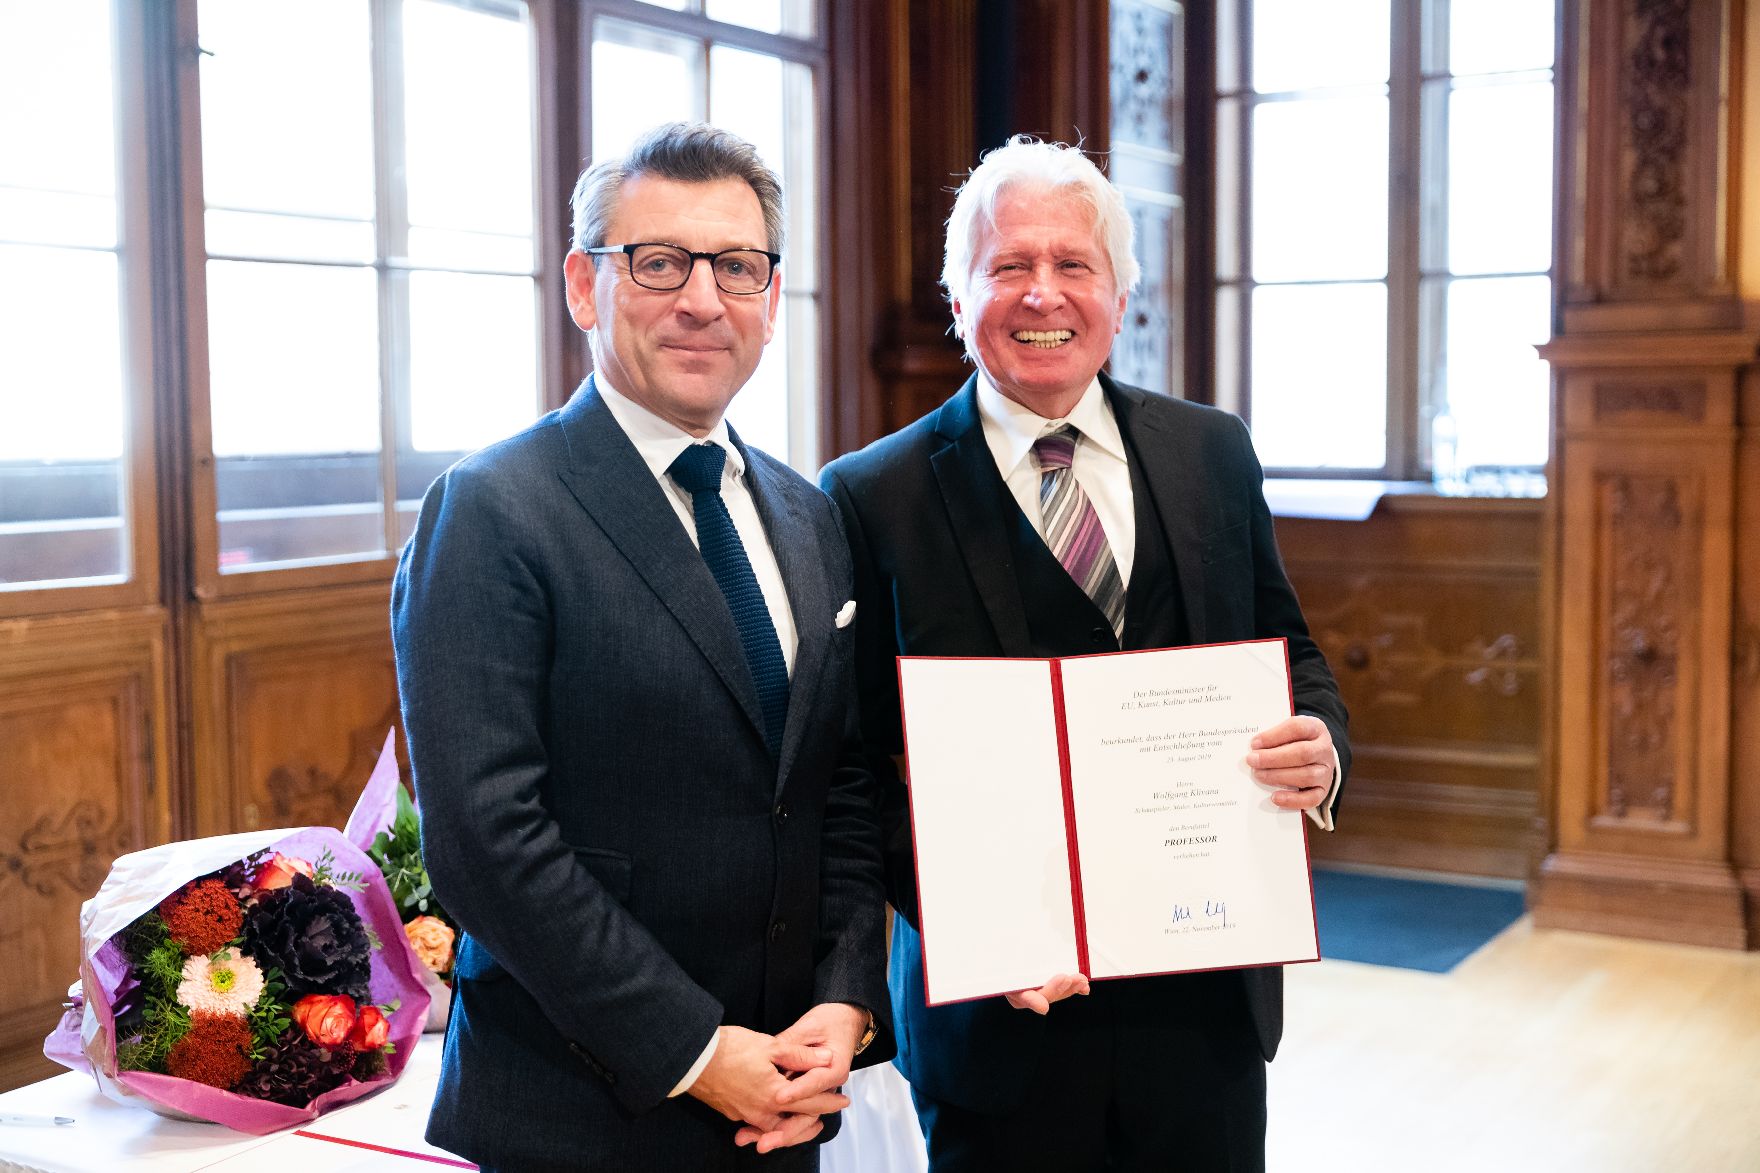 Am 22. November 2019 überreichte Sektionschef Jürgen Meindl (l.) das Goldene Ehrenzeichen für Verdienste um die Republik Österreich an Erich Martin Wolf und die Urkunde, mit der Wolfgang Klivana (r.) der Berufstitel Professor verliehen wurde.